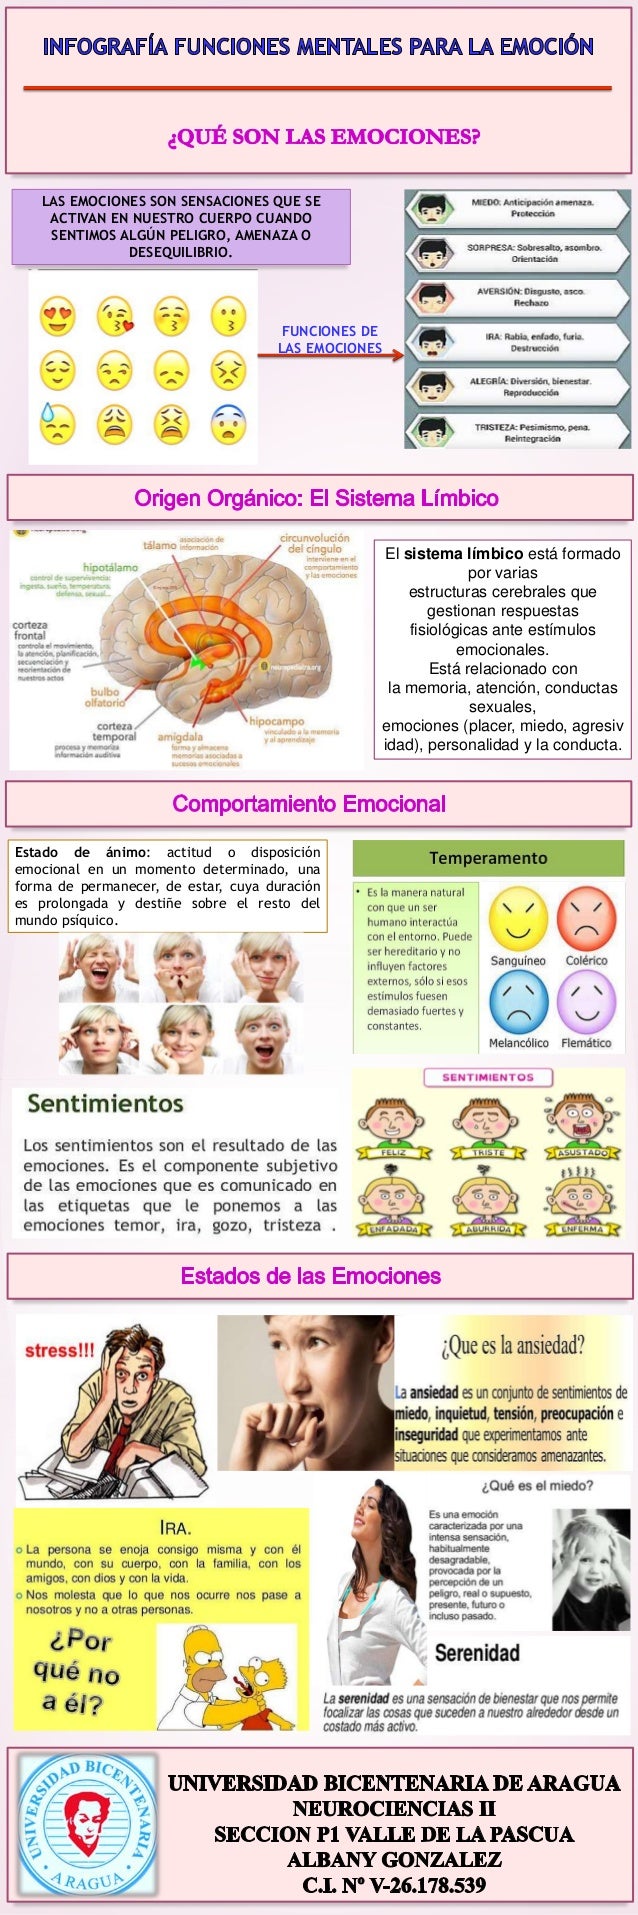 Infografia funciones mentales para la emocion albany gonzalez p1 vdlp